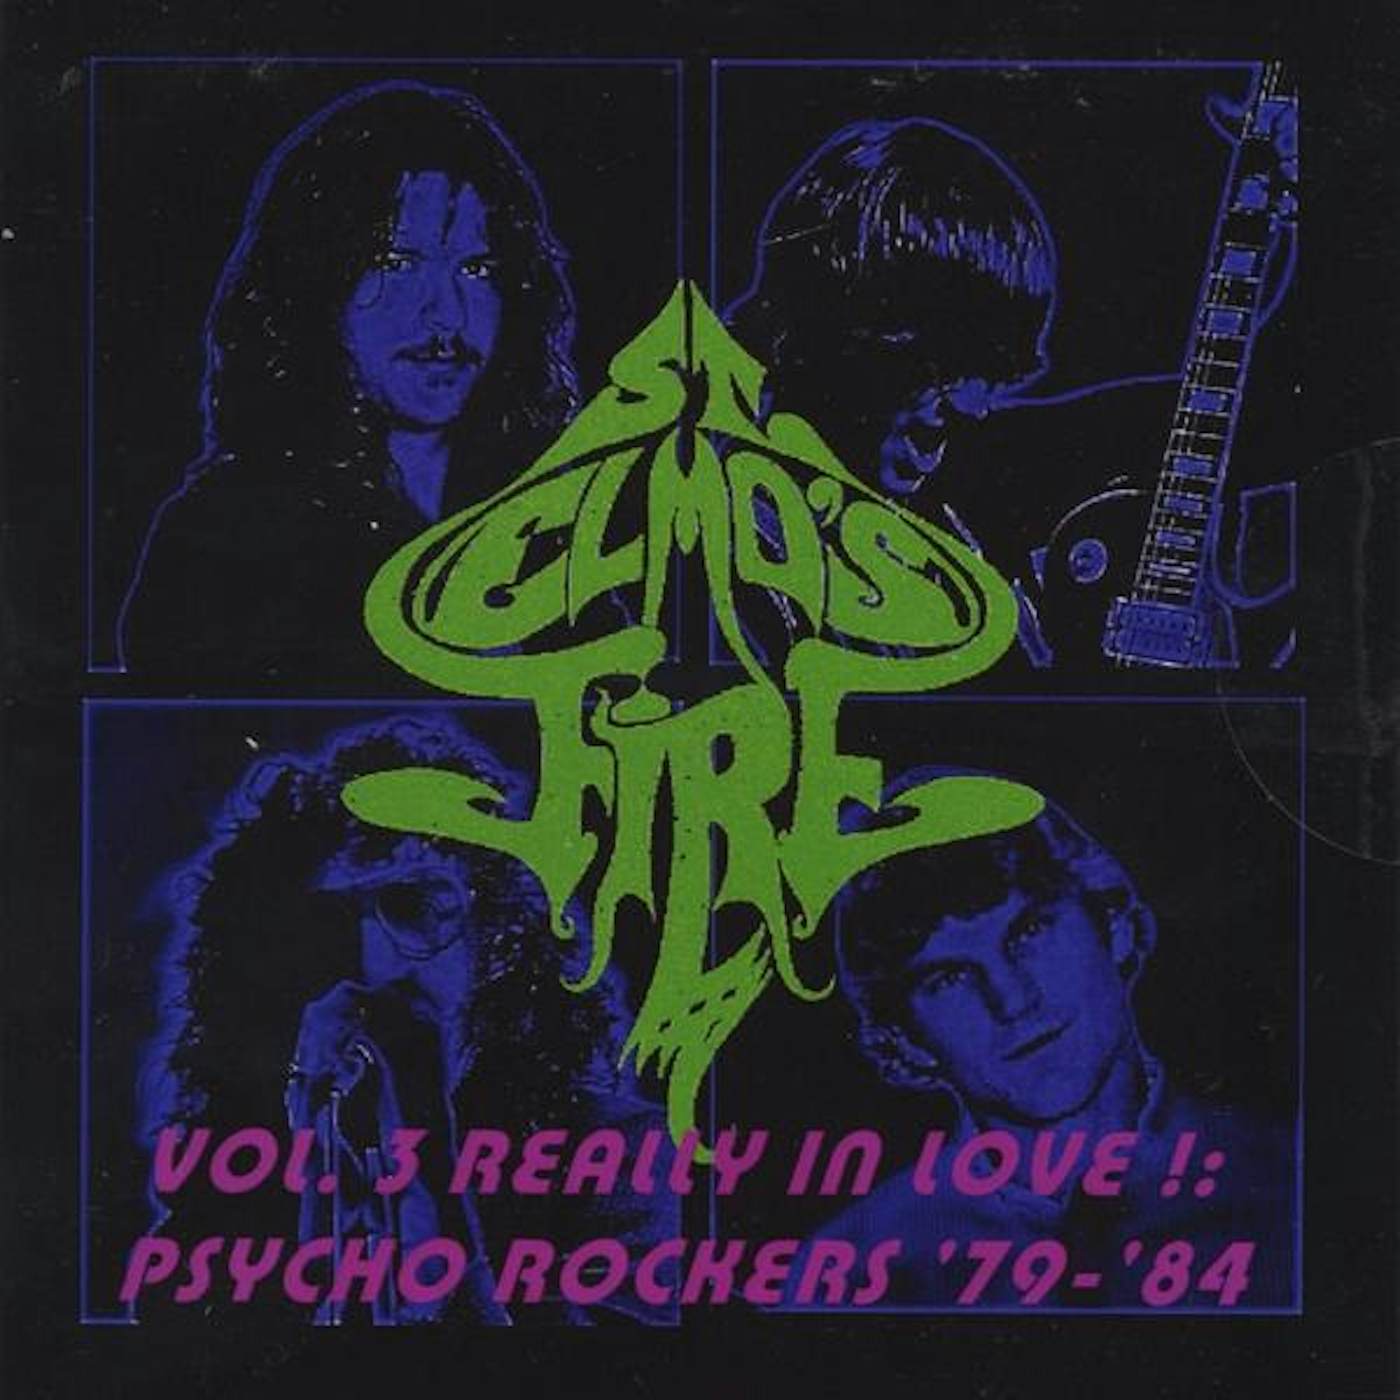 St. Elmo's Fire REALLY IN LOVE!: PSYCHO ROCKERS 1979-84 3 CD